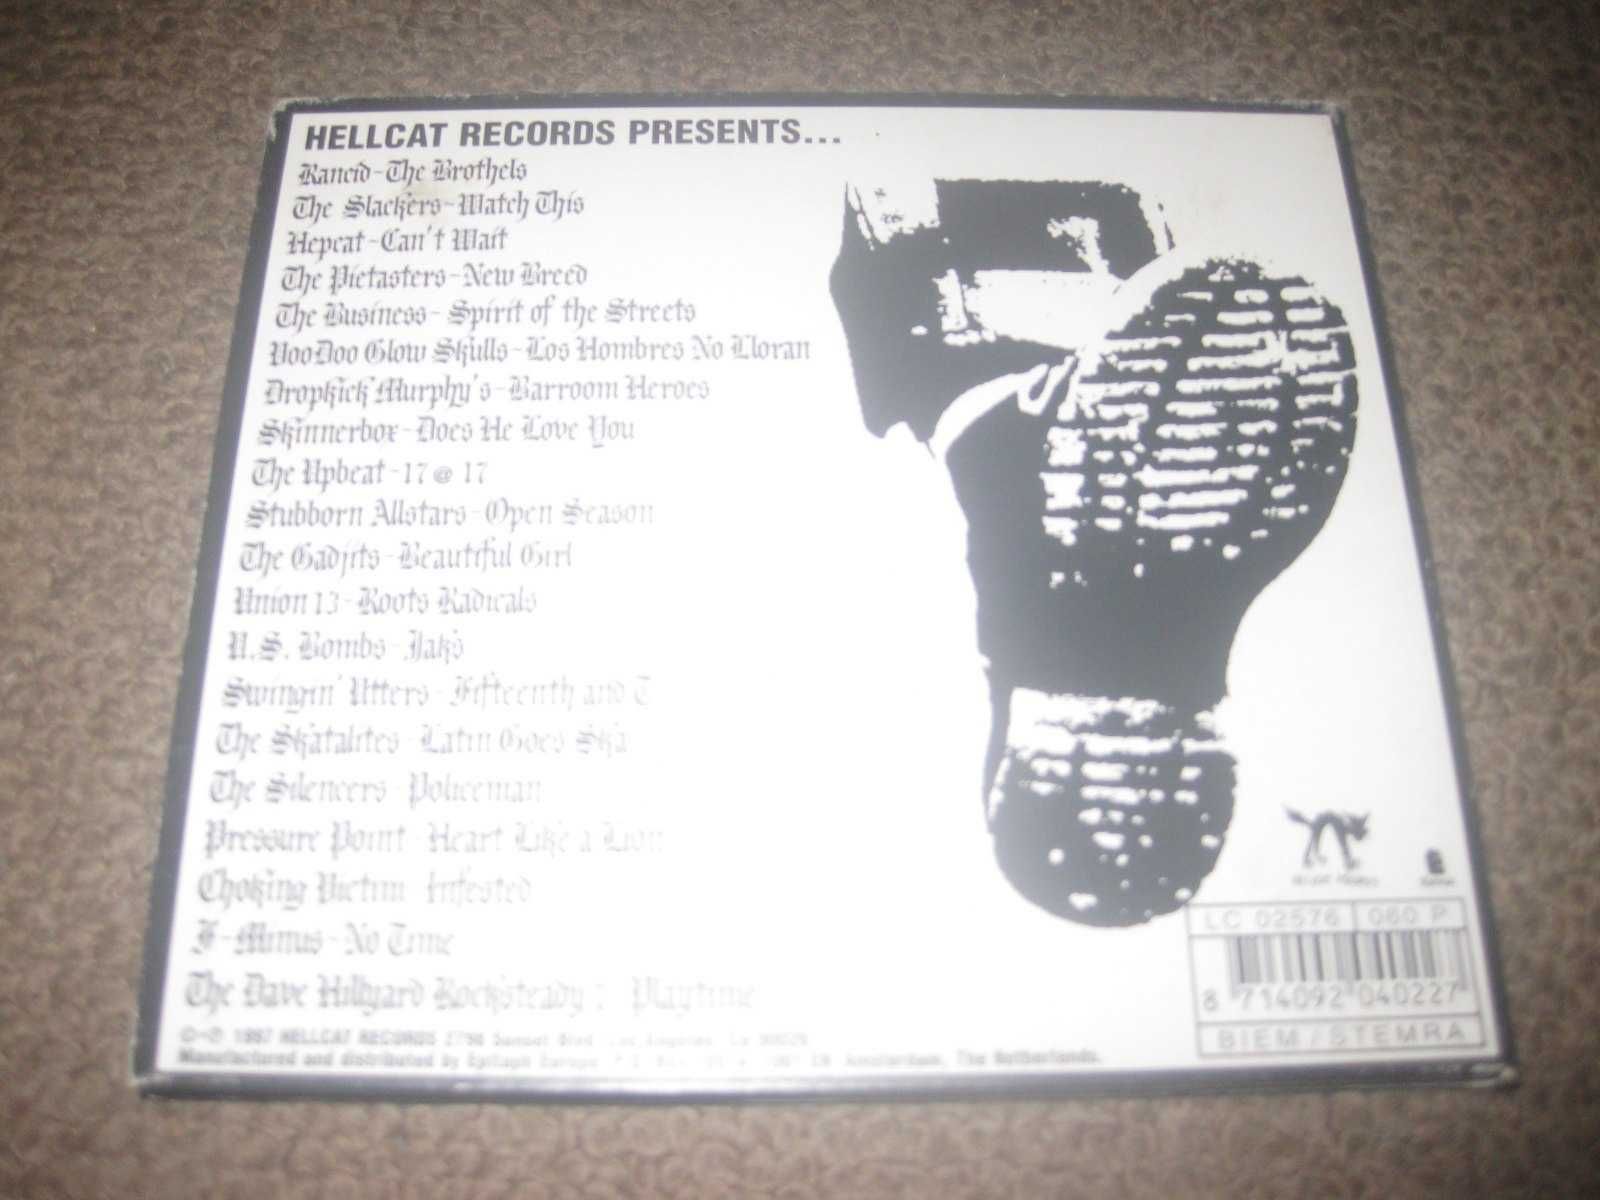 CD Coletânea "Give `Em The Boot" Digipack/Portes Grátis!